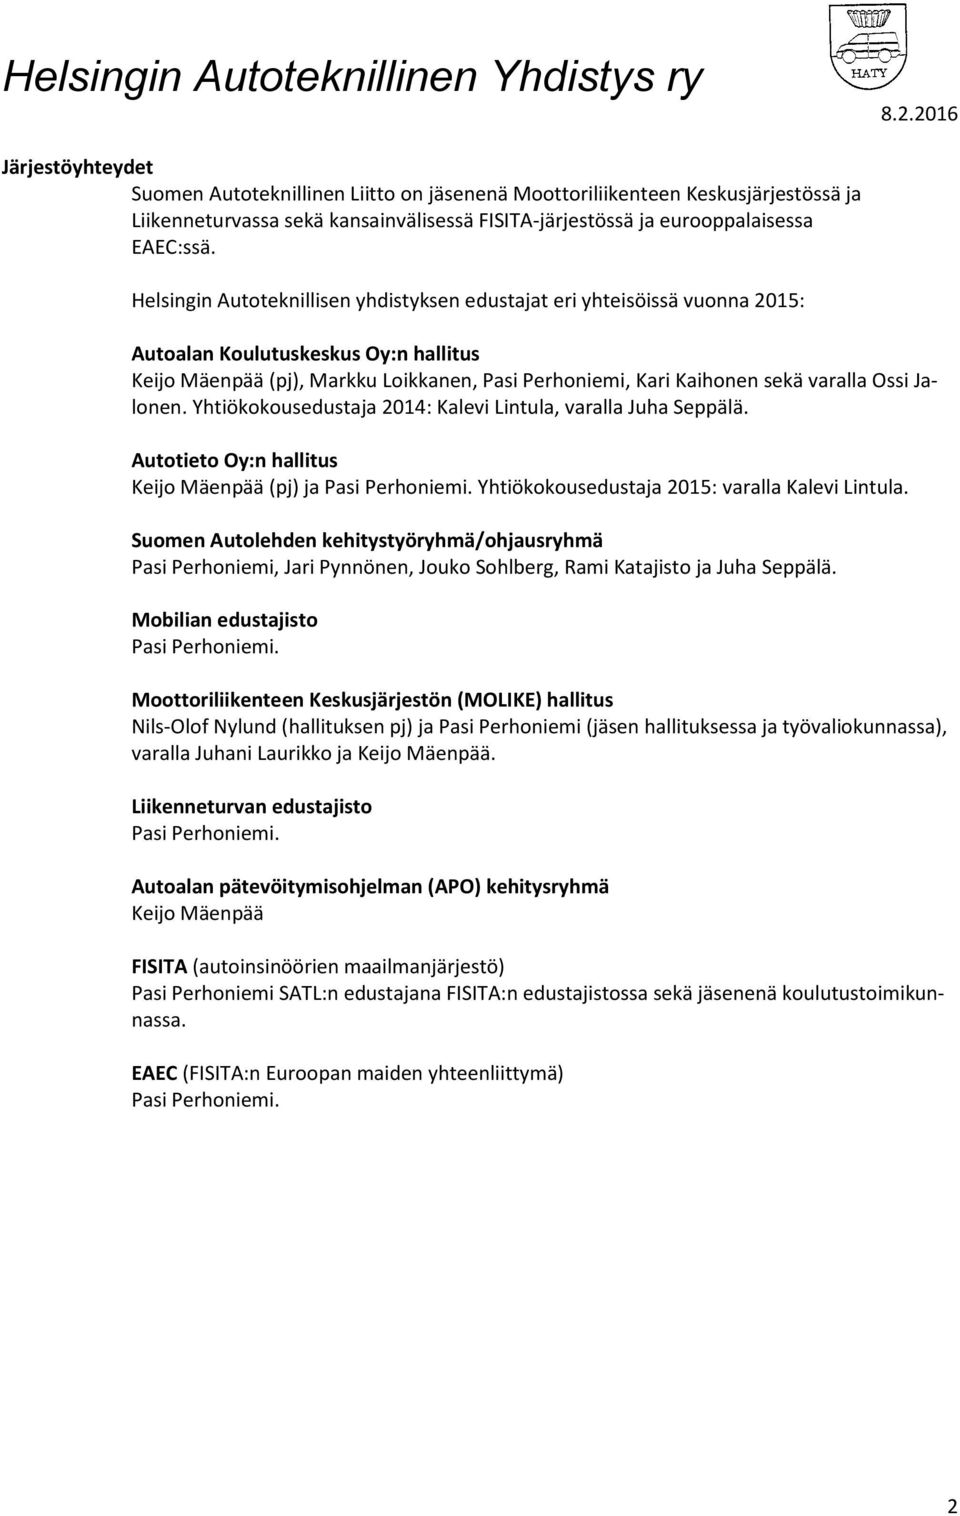 Ossi Jalonen. Yhtiökokousedustaja 2014: Kalevi Lintula, varalla Juha Seppälä. Autotieto Oy:n hallitus Keijo Mäenpää (pj) ja Pasi Perhoniemi. Yhtiökokousedustaja 2015: varalla Kalevi Lintula.